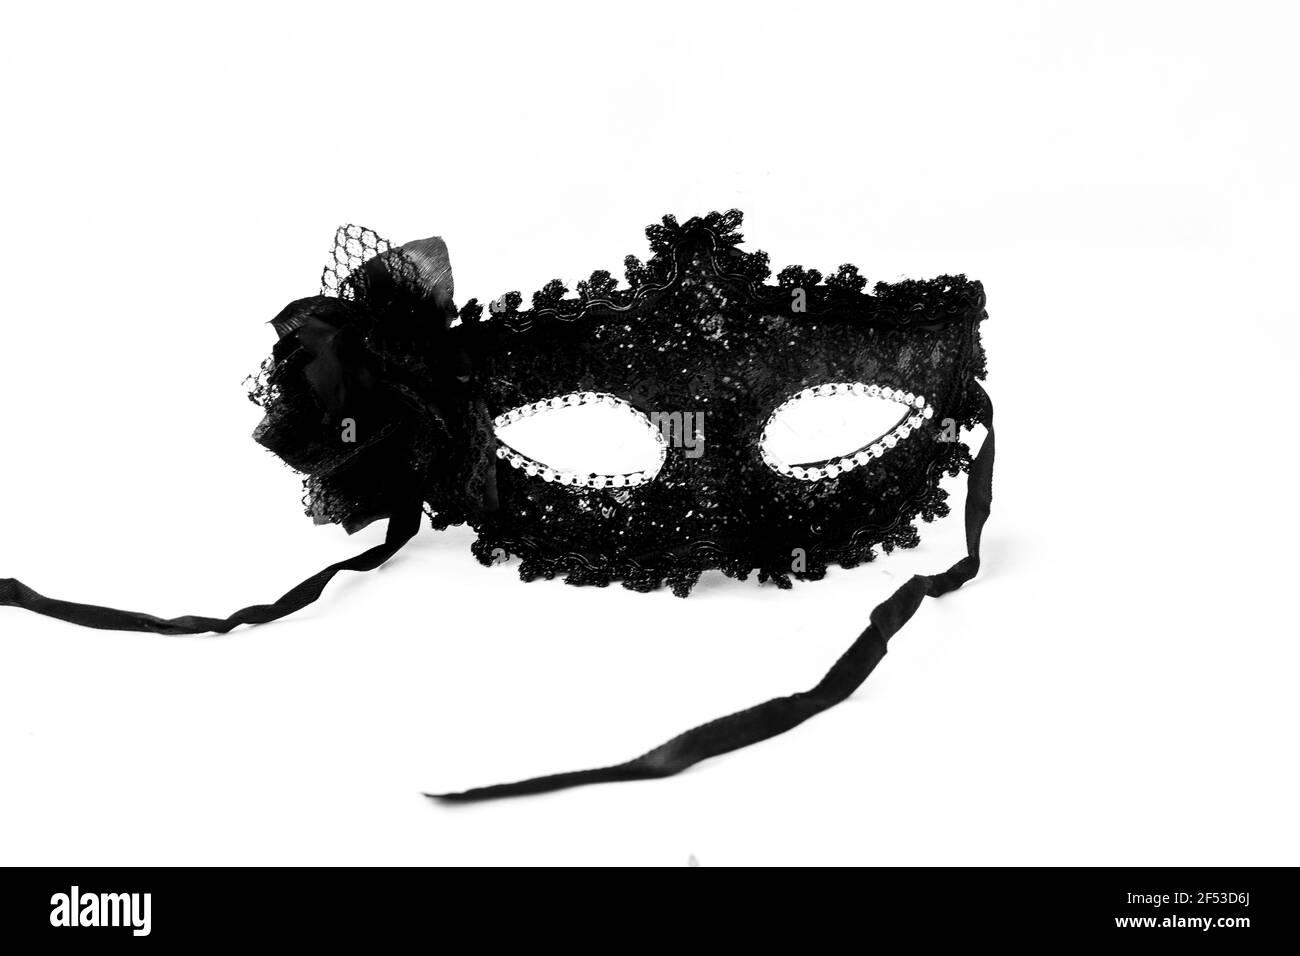 Una maschera veneziana nera fantasia con pizzo e diamantati per carnevale, fasching o mardi gras isolato su uno sfondo bianco. Foto Stock